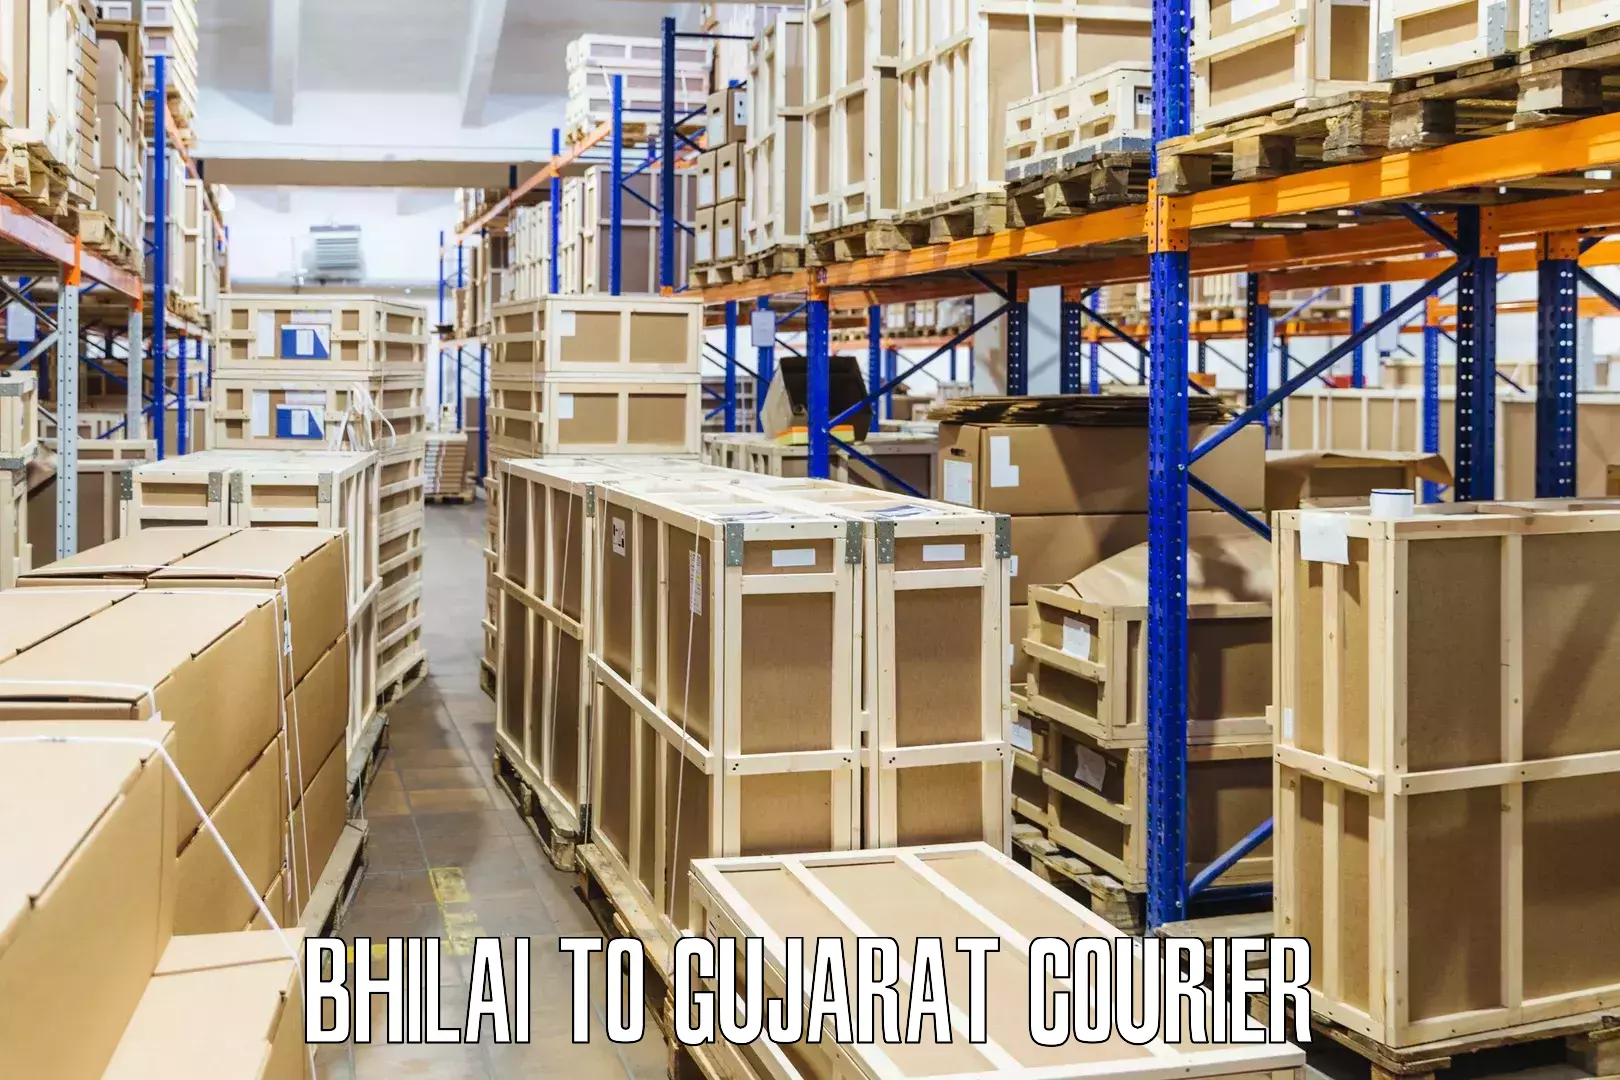 Customizable shipping options in Bhilai to Shihori